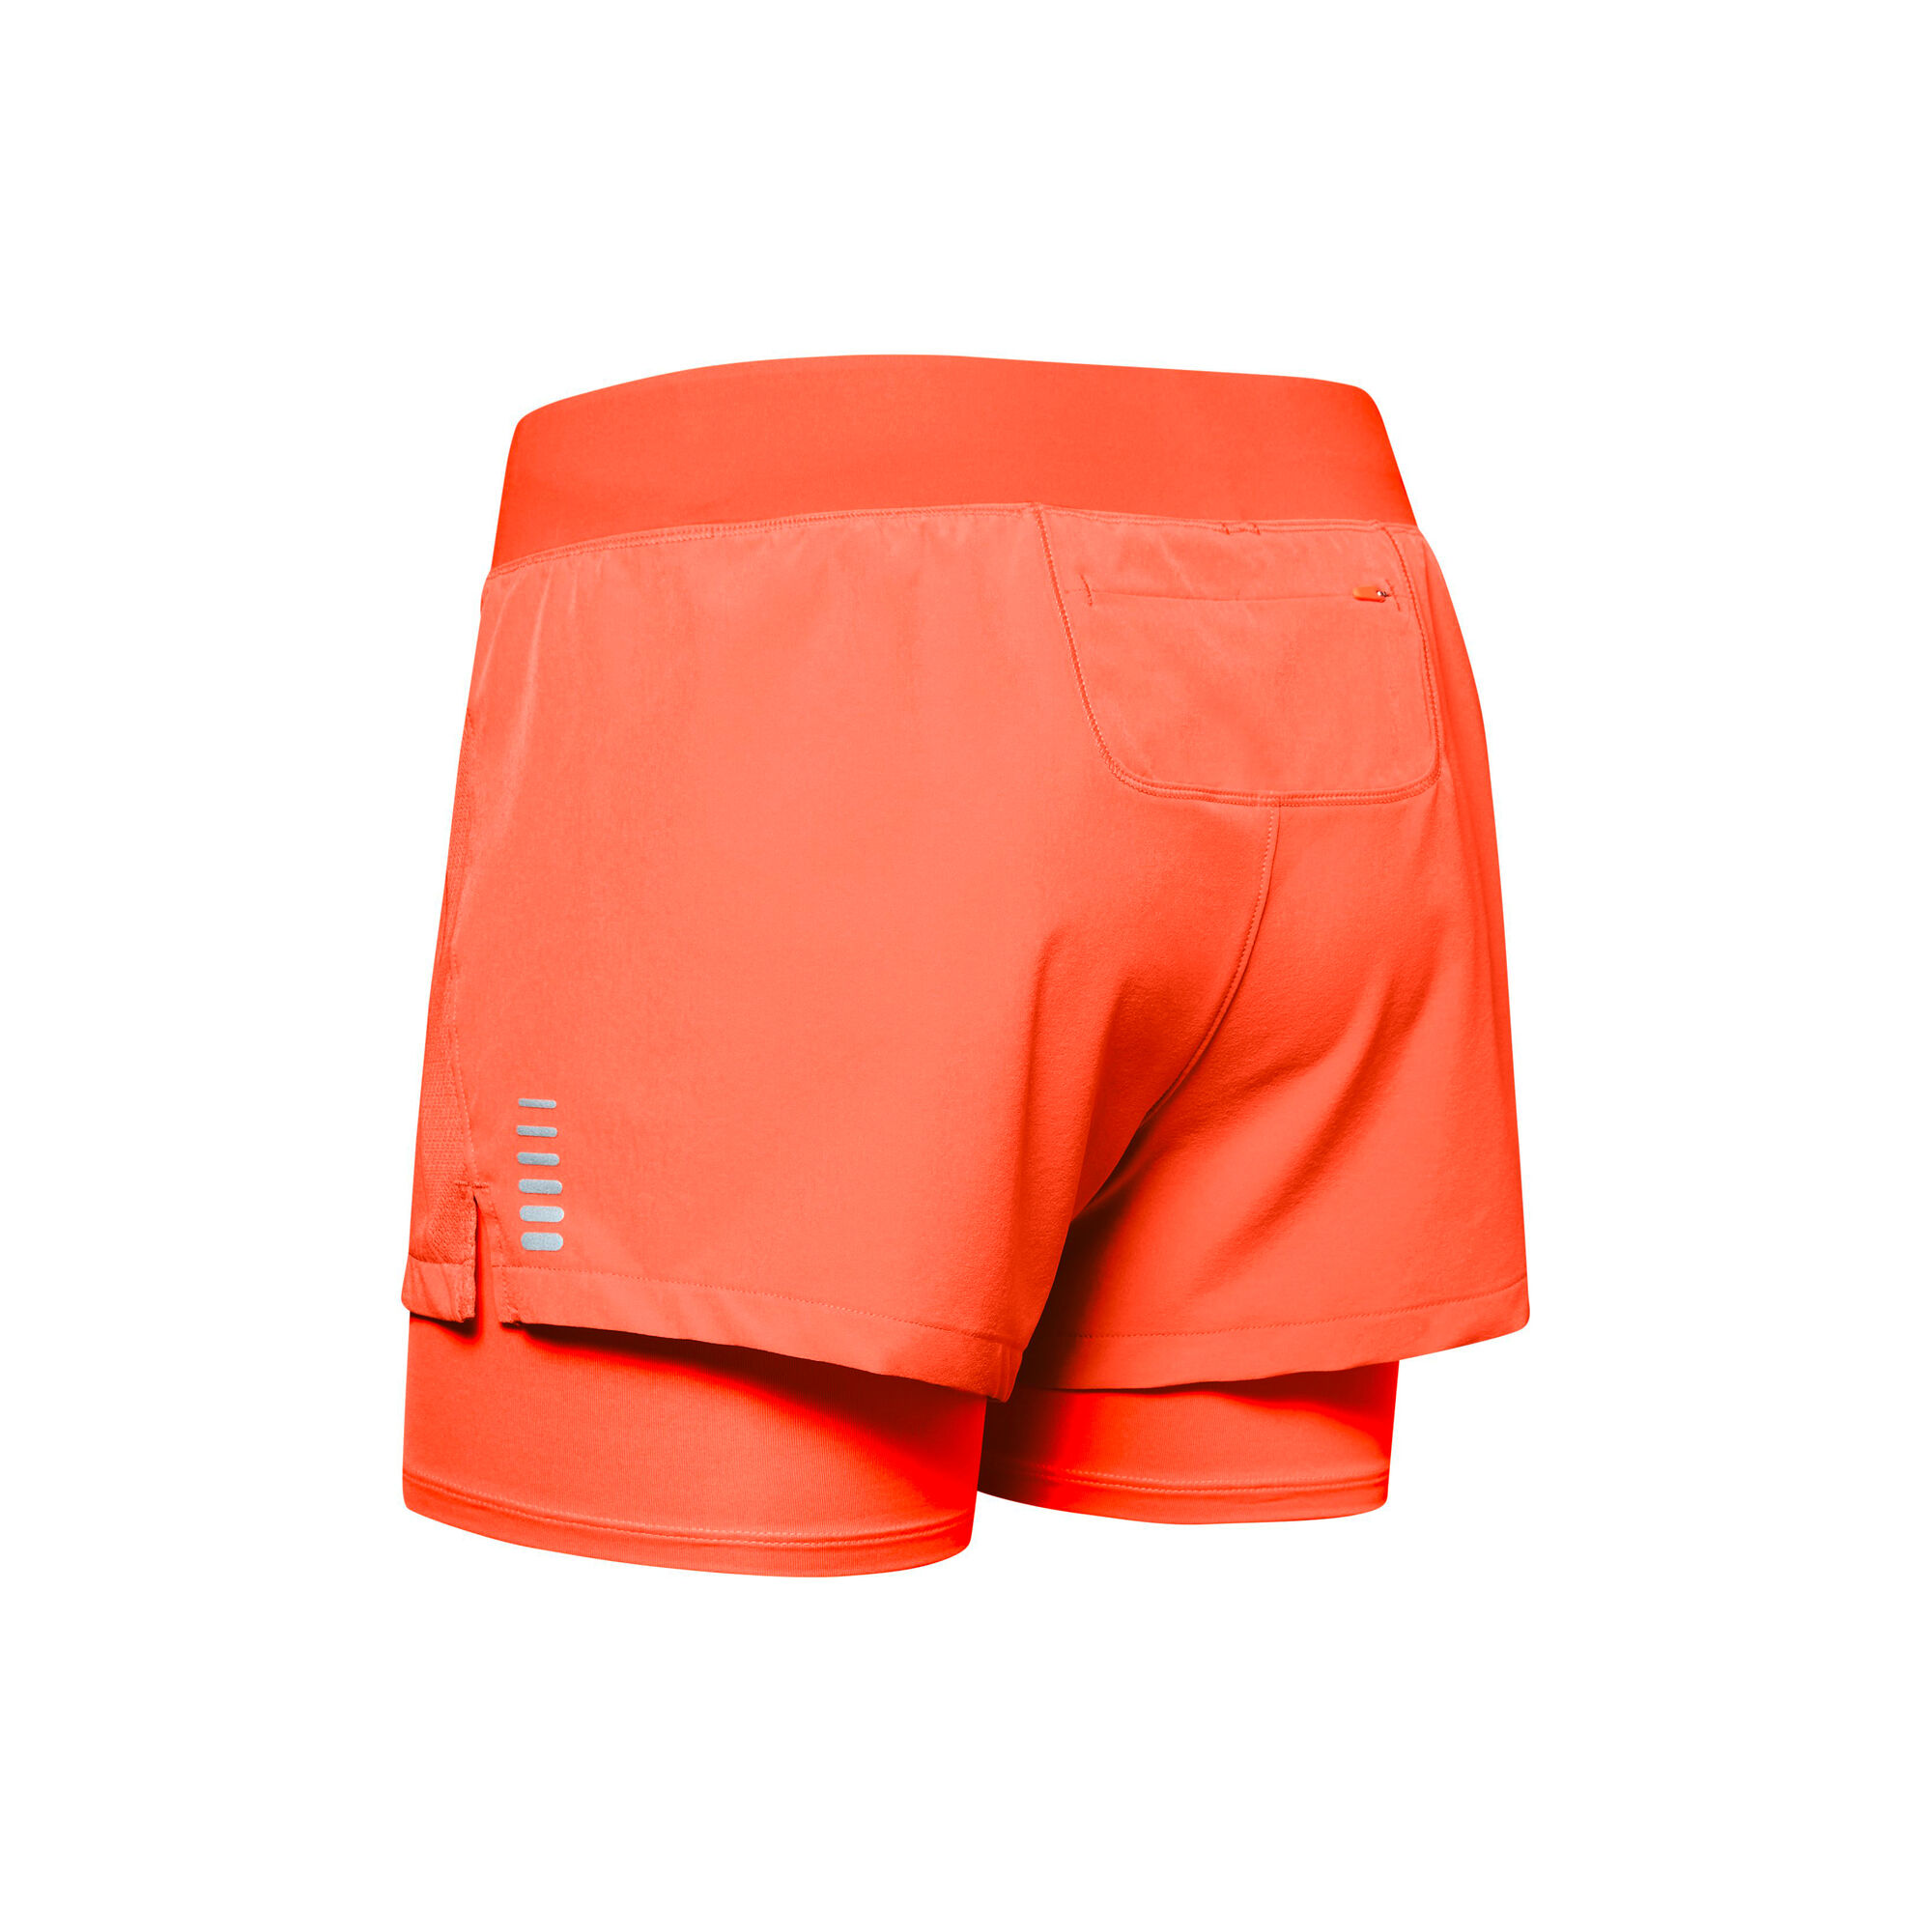 Qualifier Speedpocket 2in1 Shorts Women - Orange, Silver